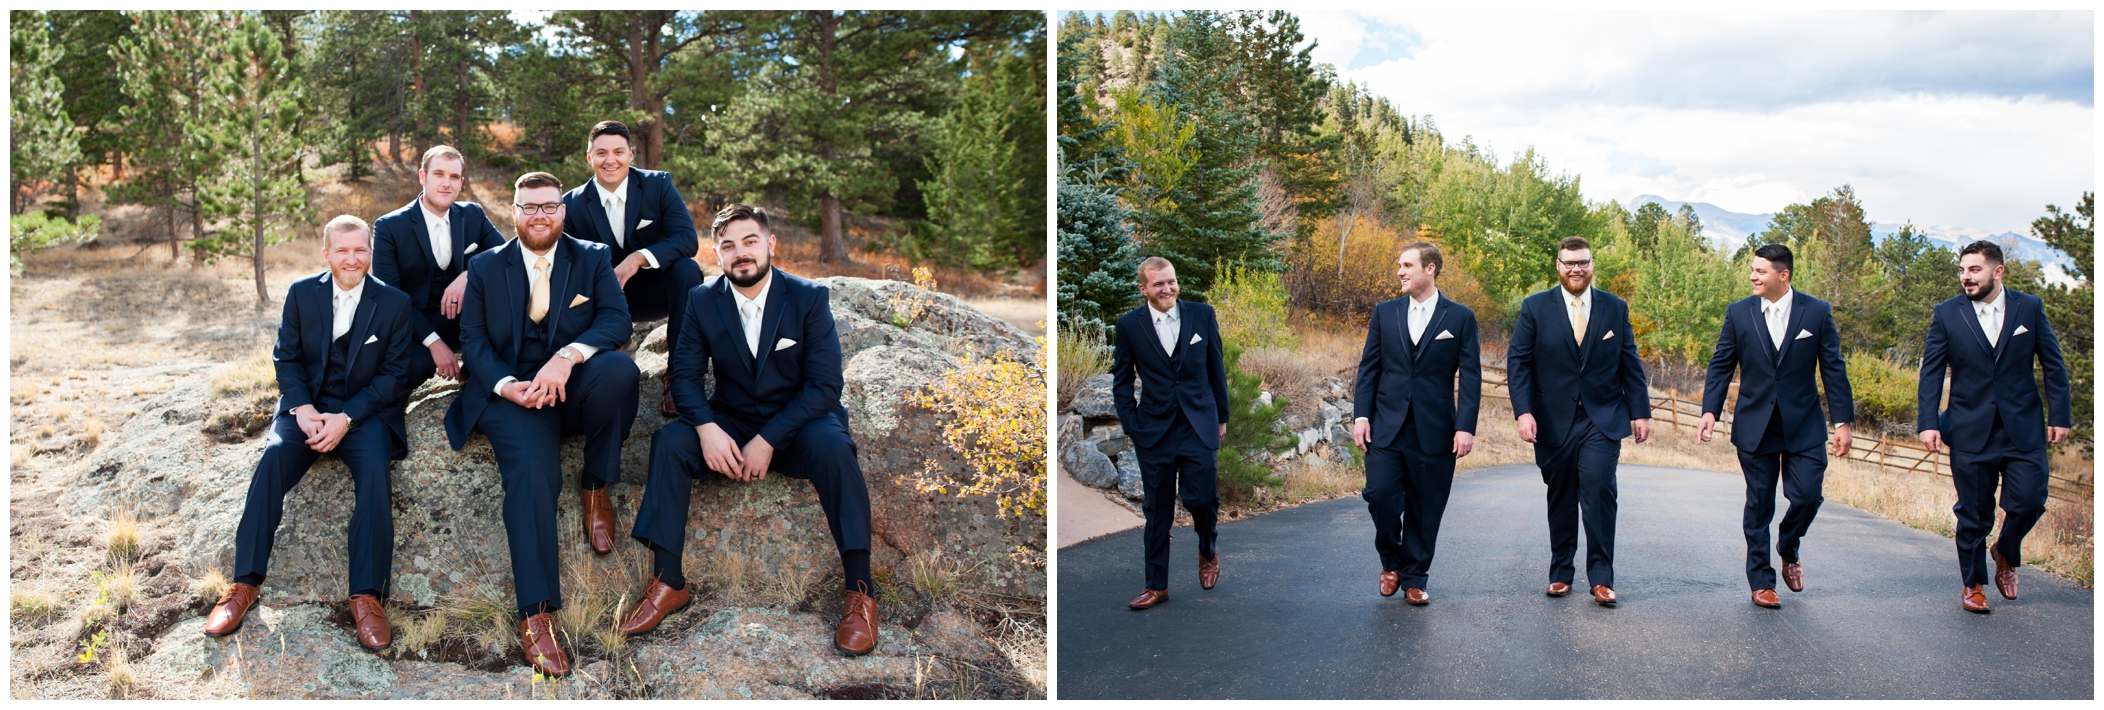 Colorado groomsmen in blue suits